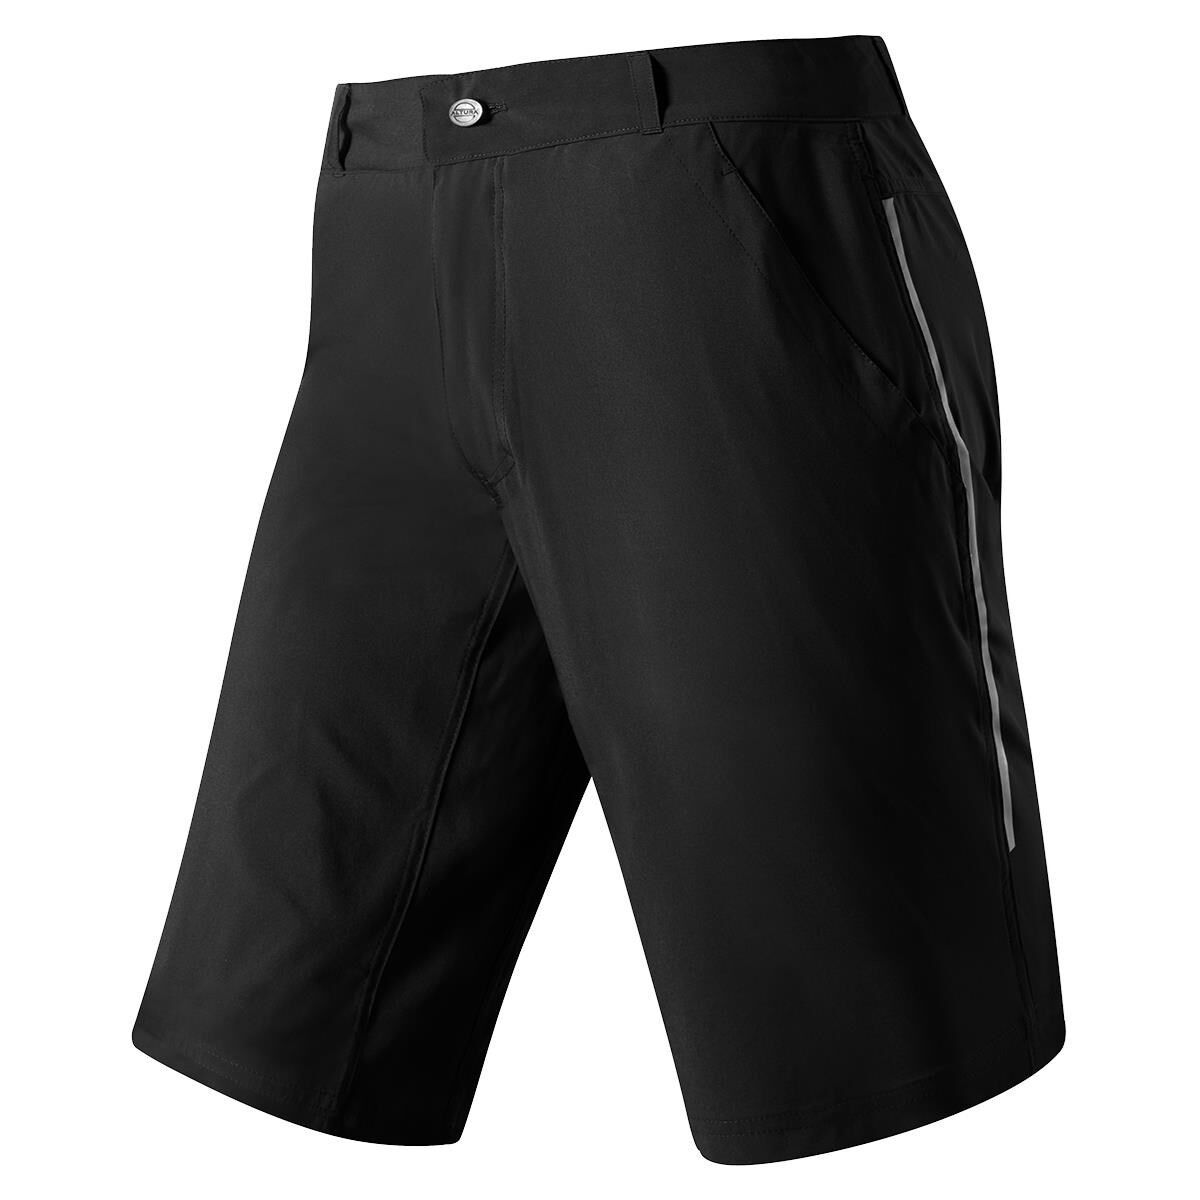 Altura Allroad - Bike shorts - Men's